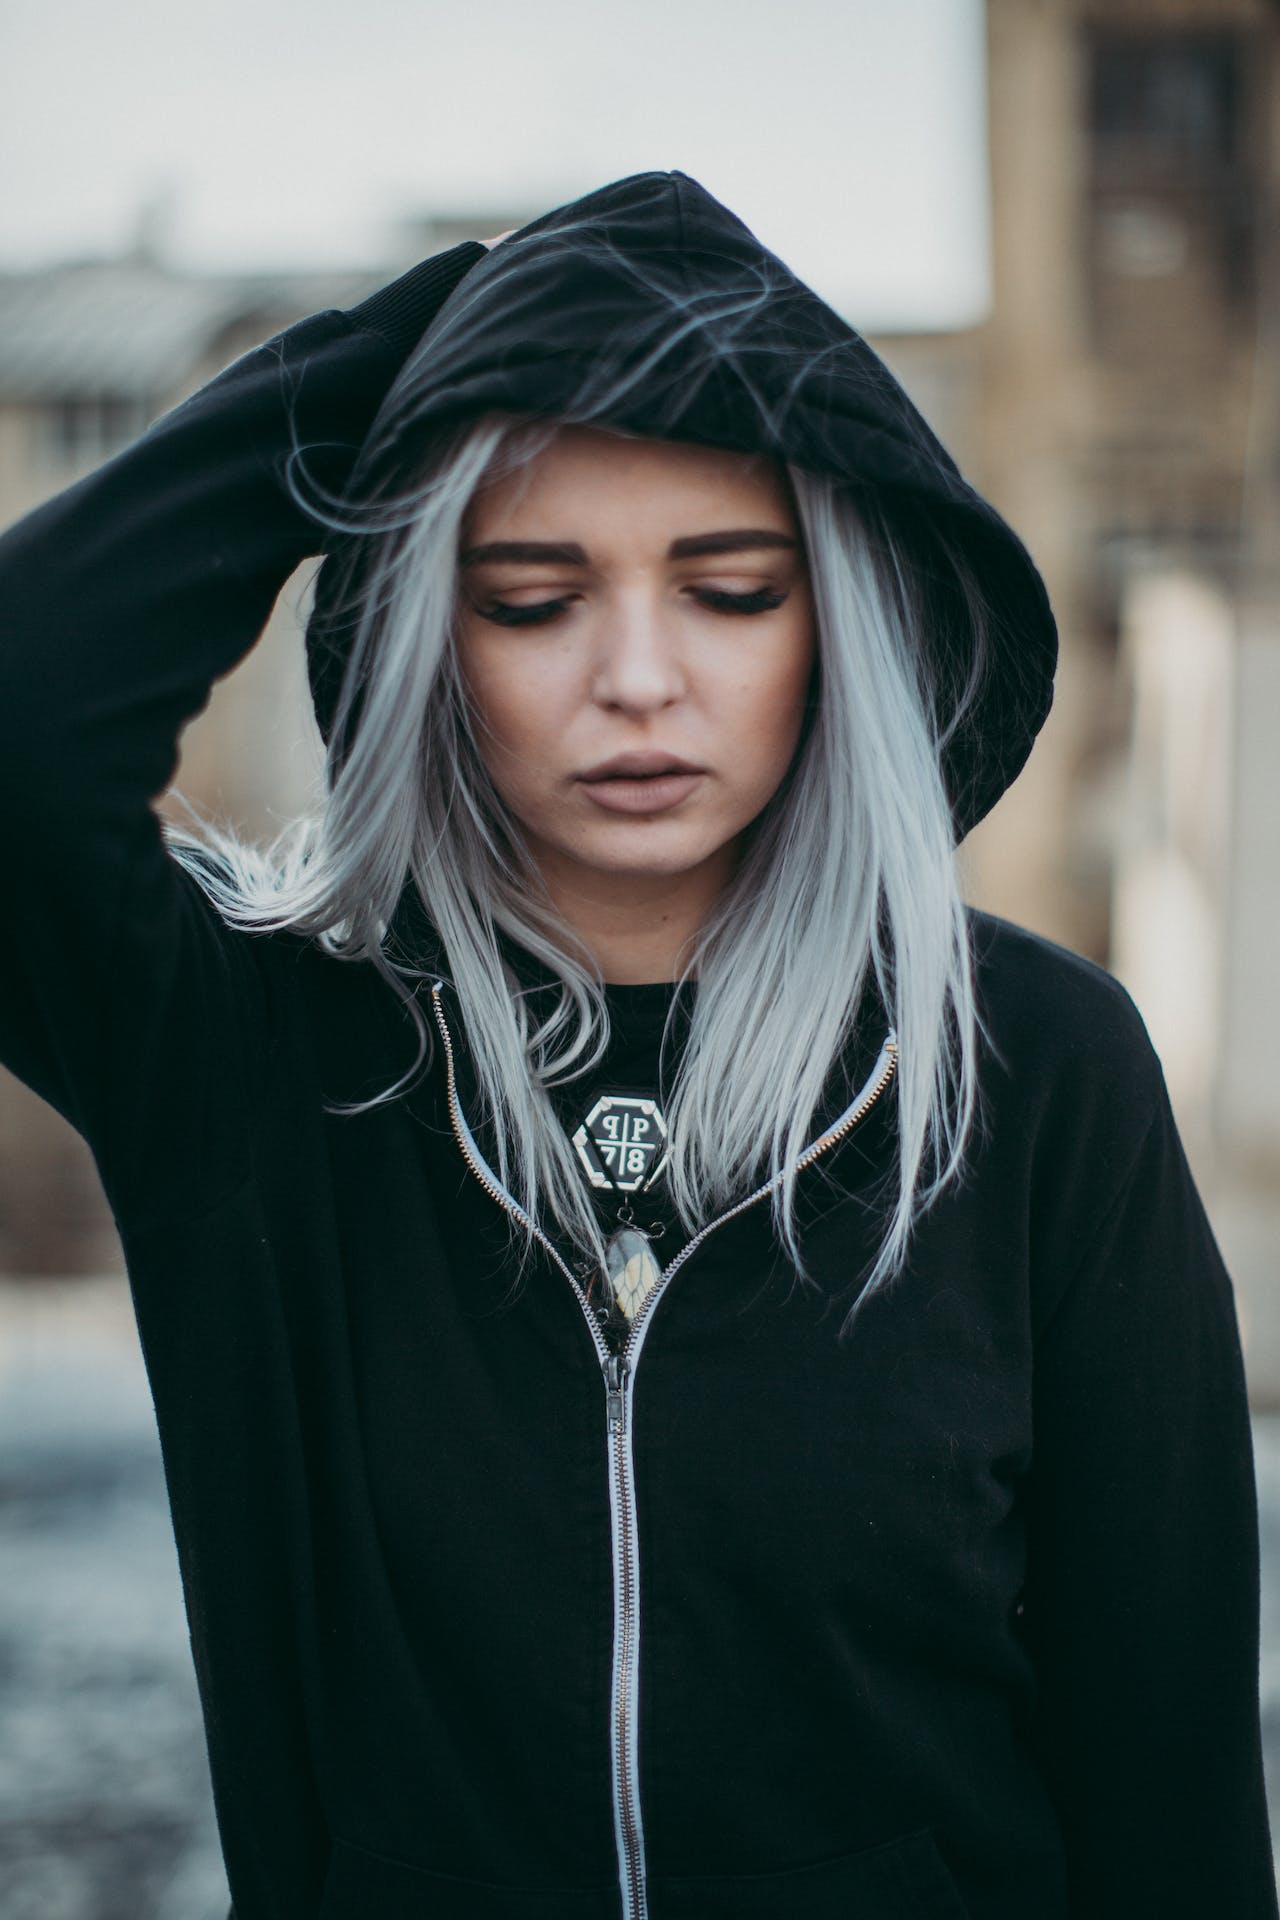 Woman with black hoodie